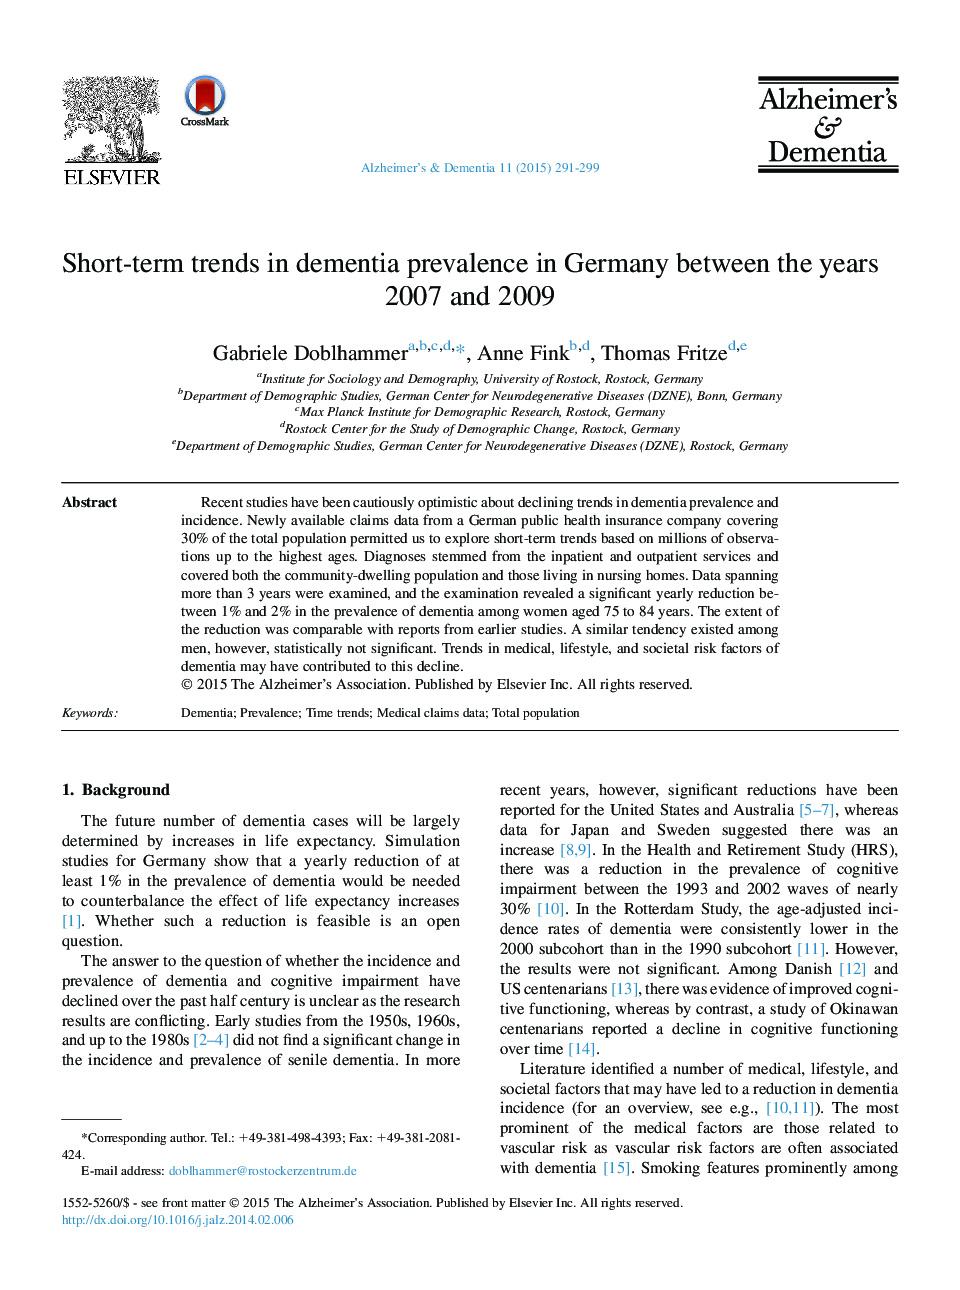 روند کوتاه مدت شیوع کم خونی در آلمان بین سال های 2007 و 2009 